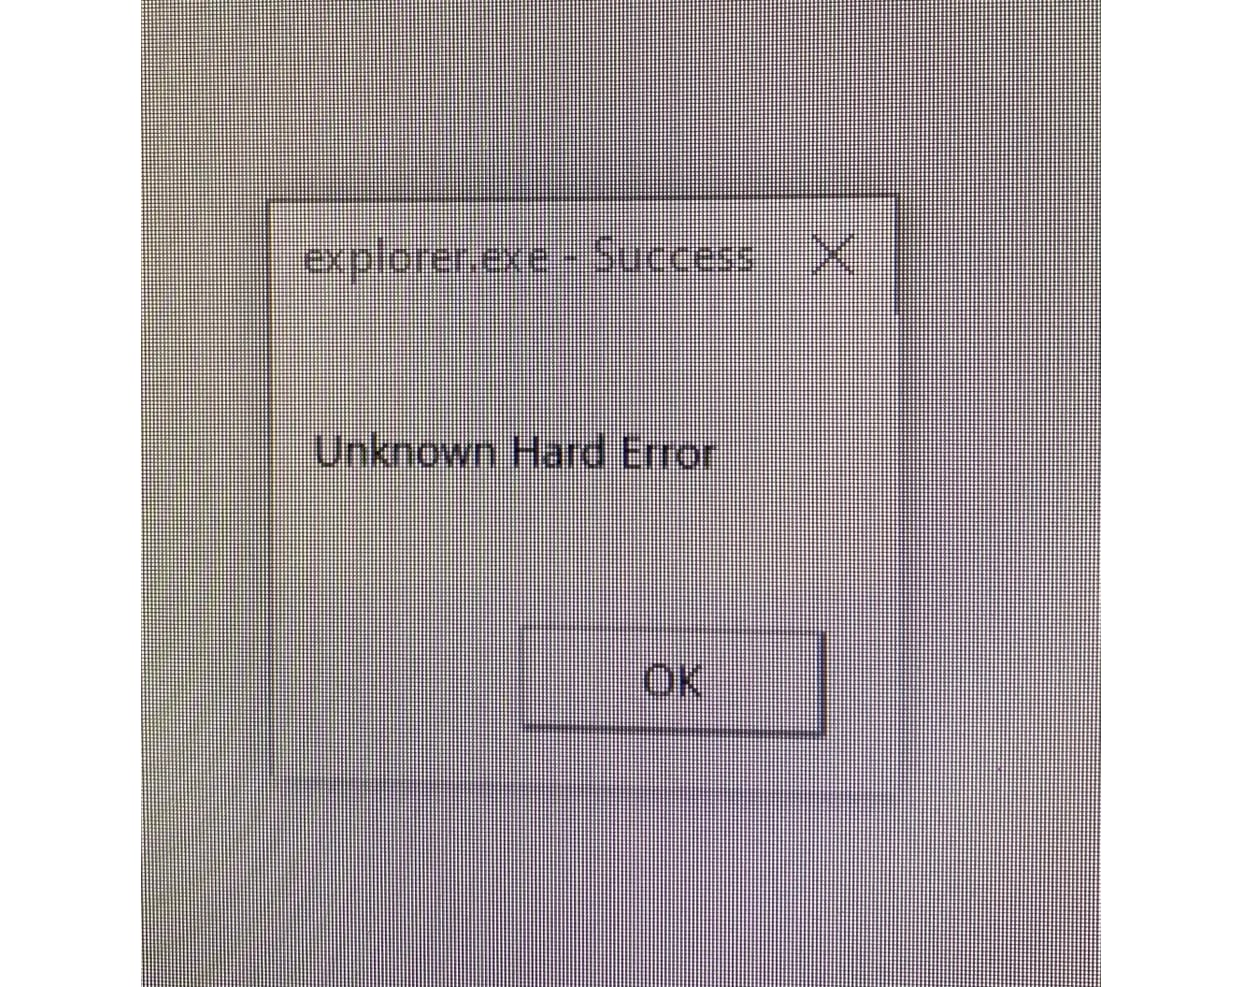 Success: Unknown Hard Error